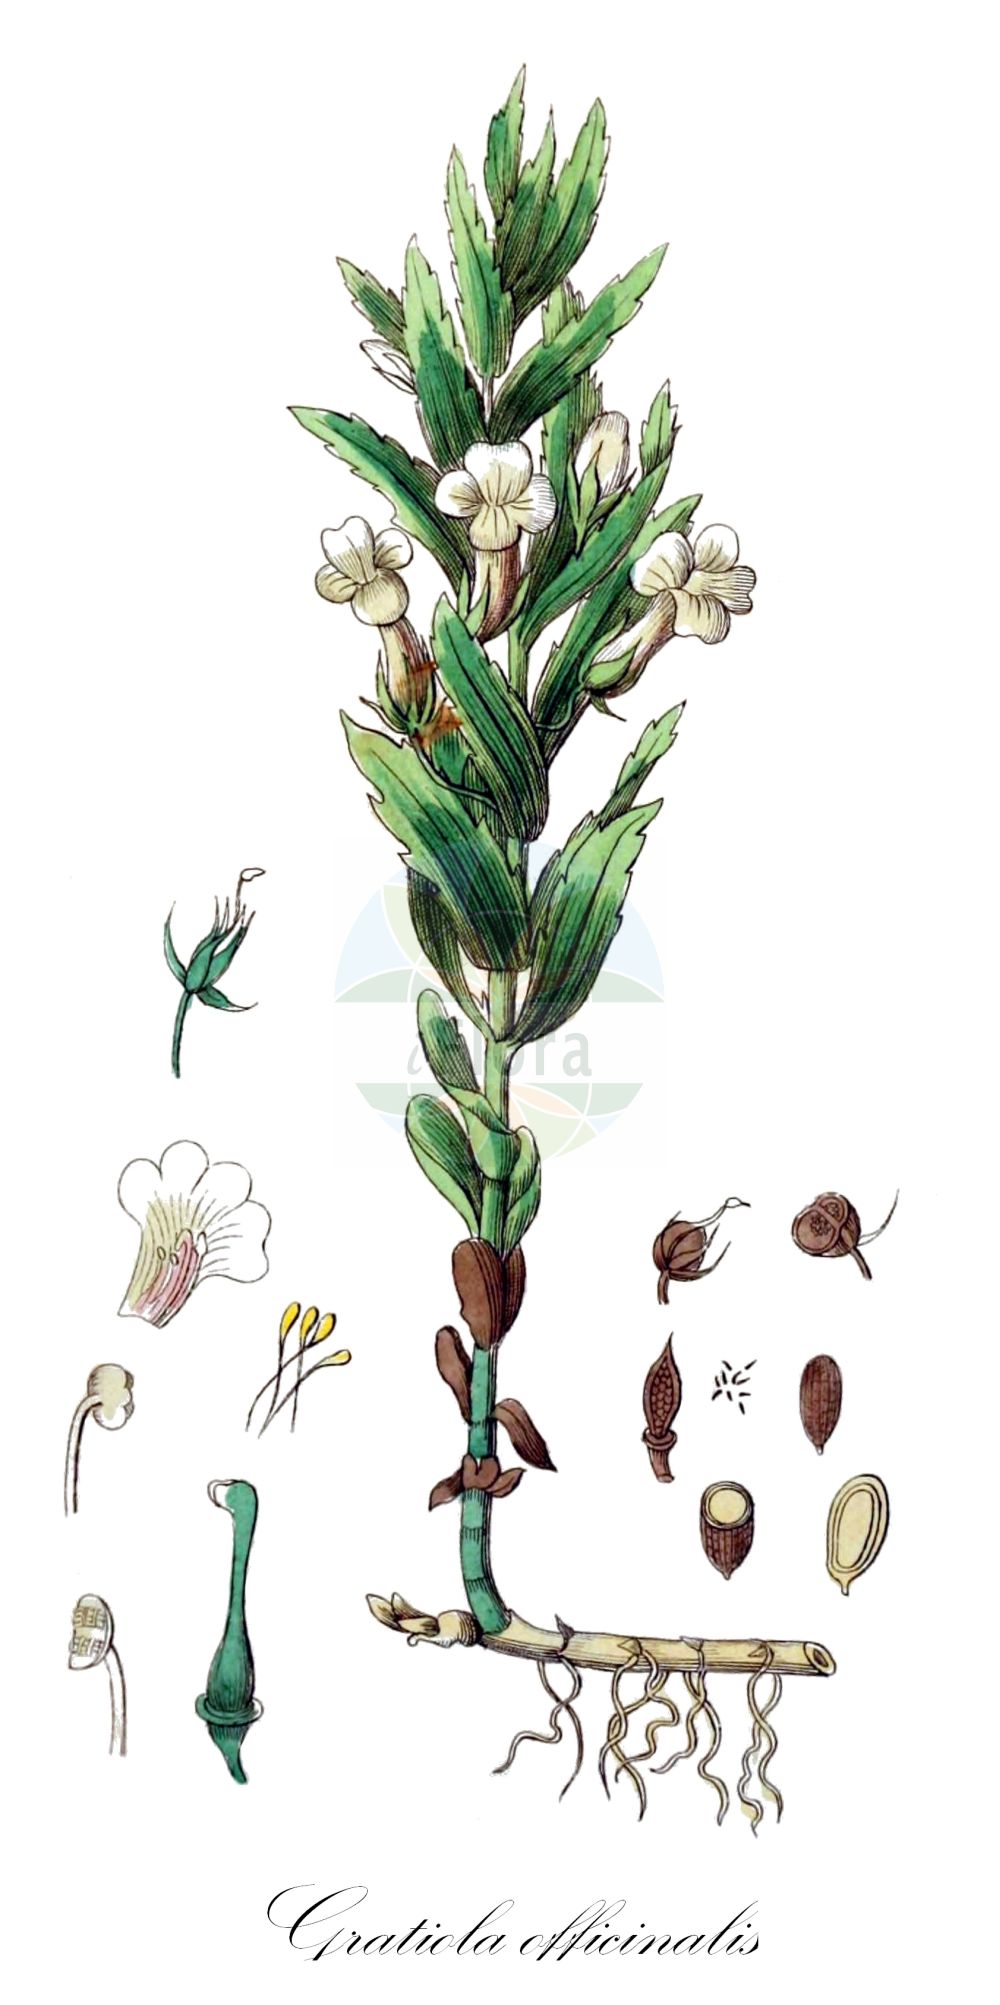 Historische Abbildung von Gratiola officinalis (Gottes-Gnadenkraut - Gratiole). Das Bild zeigt Blatt, Bluete, Frucht und Same. ---- Historical Drawing of Gratiola officinalis (Gottes-Gnadenkraut - Gratiole). The image is showing leaf, flower, fruit and seed.(Gratiola officinalis,Gottes-Gnadenkraut,Gratiole,Gratiola officinalis,Gratiola officinalis L. subsp.,Gratiola officinalis subsp. broteri,Gottes-Gnadenkraut,Gratiole,Hedge Hyssop,Gratiola,Gnadenkraut,Gratiole,Plantaginaceae,Wegerichgewächse,Plantain family,Blatt,Bluete,Frucht,Same,leaf,flower,fruit,seed,Winkler (1853))